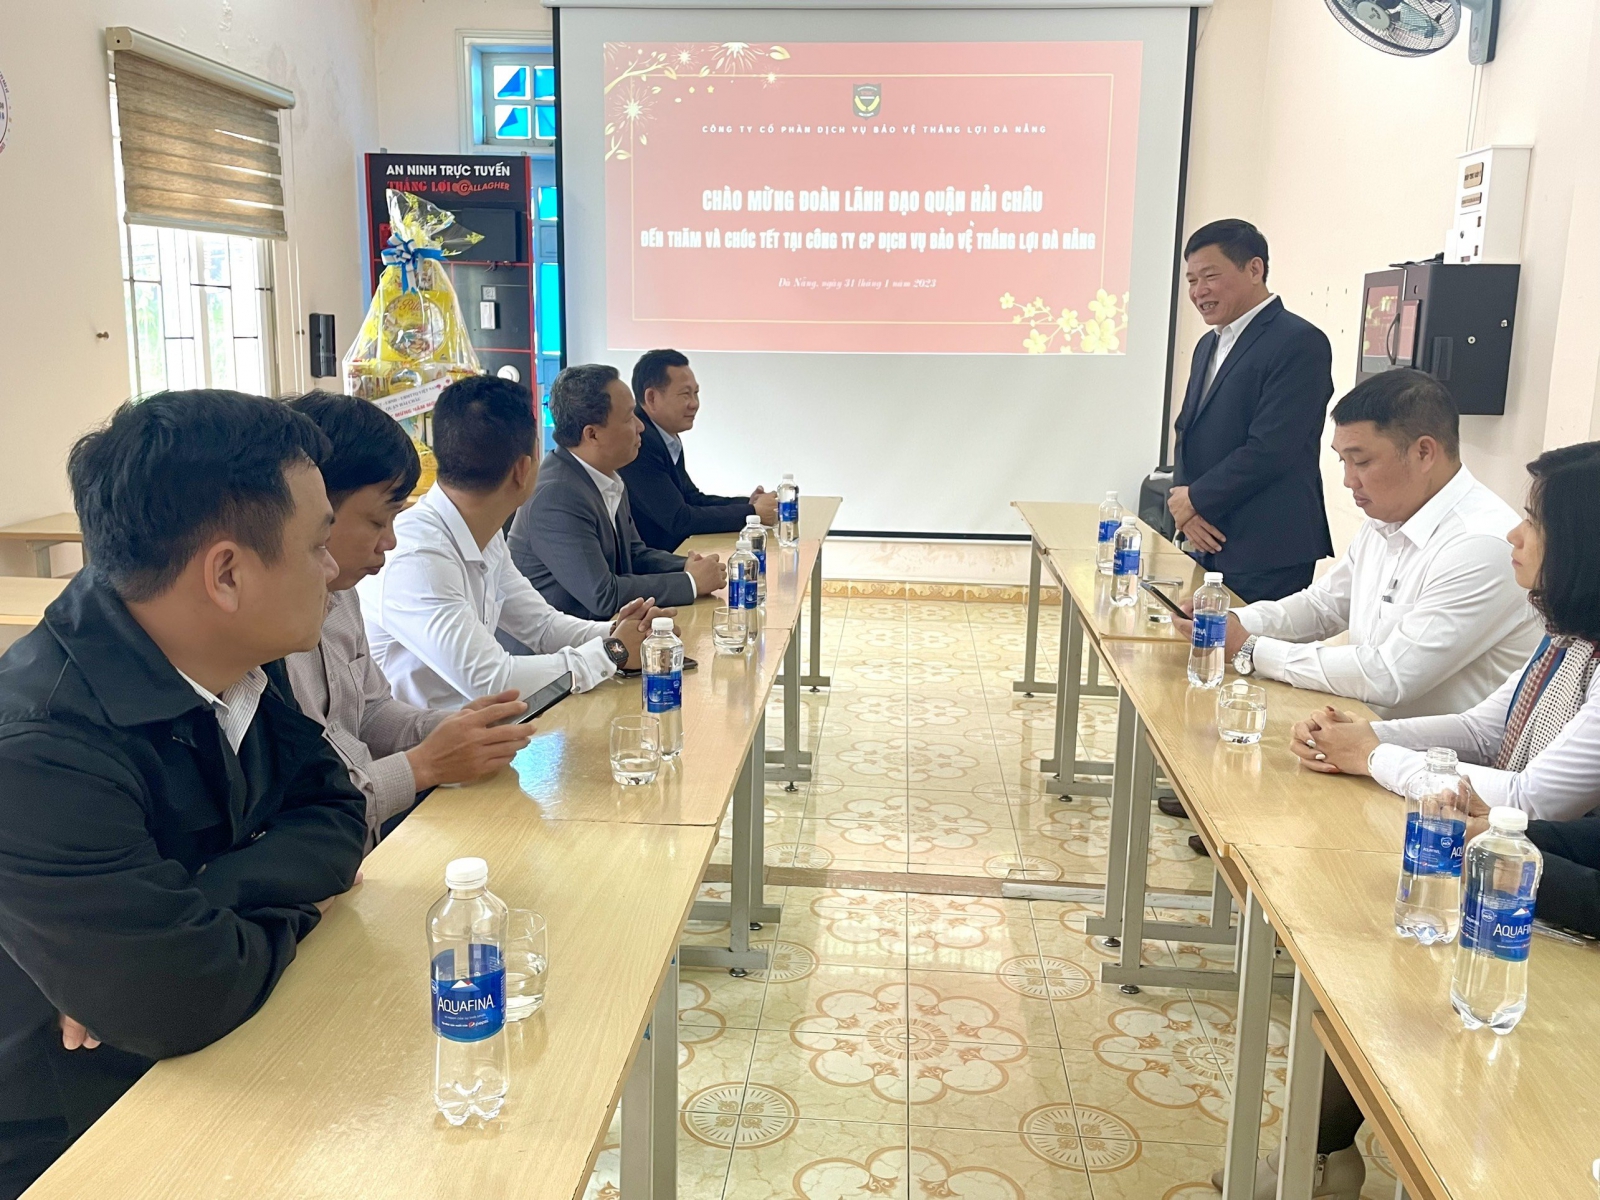 Đoàn lãnh đạo quận Hải Châu đến thăm và chúc tết công ty 2